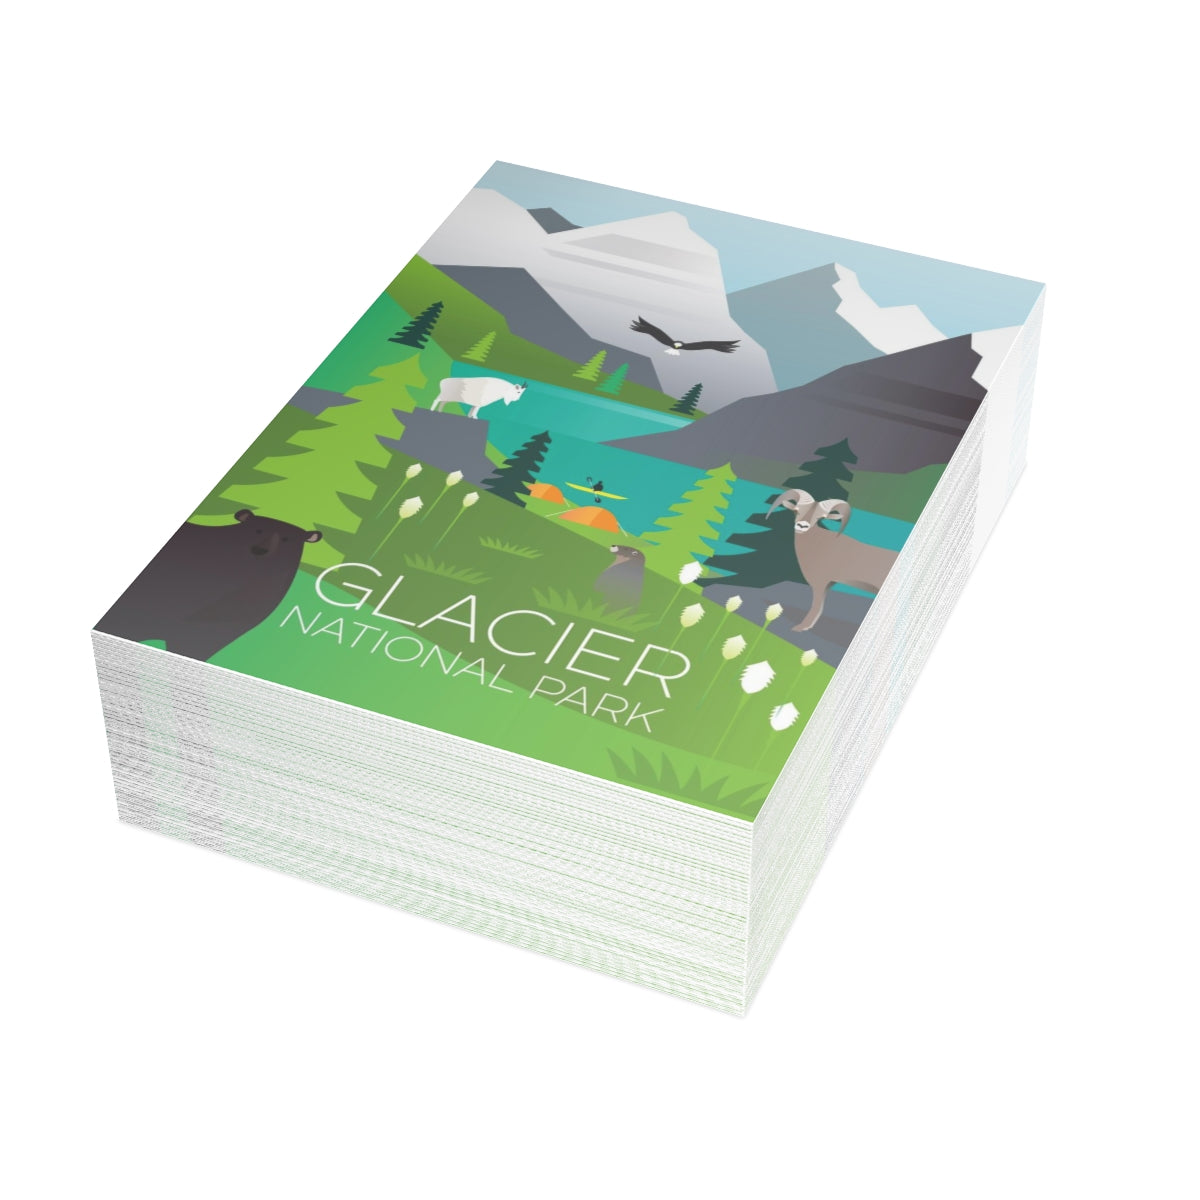 Glacier National Park Folded Matte Notecards + Envelopes (10pcs)